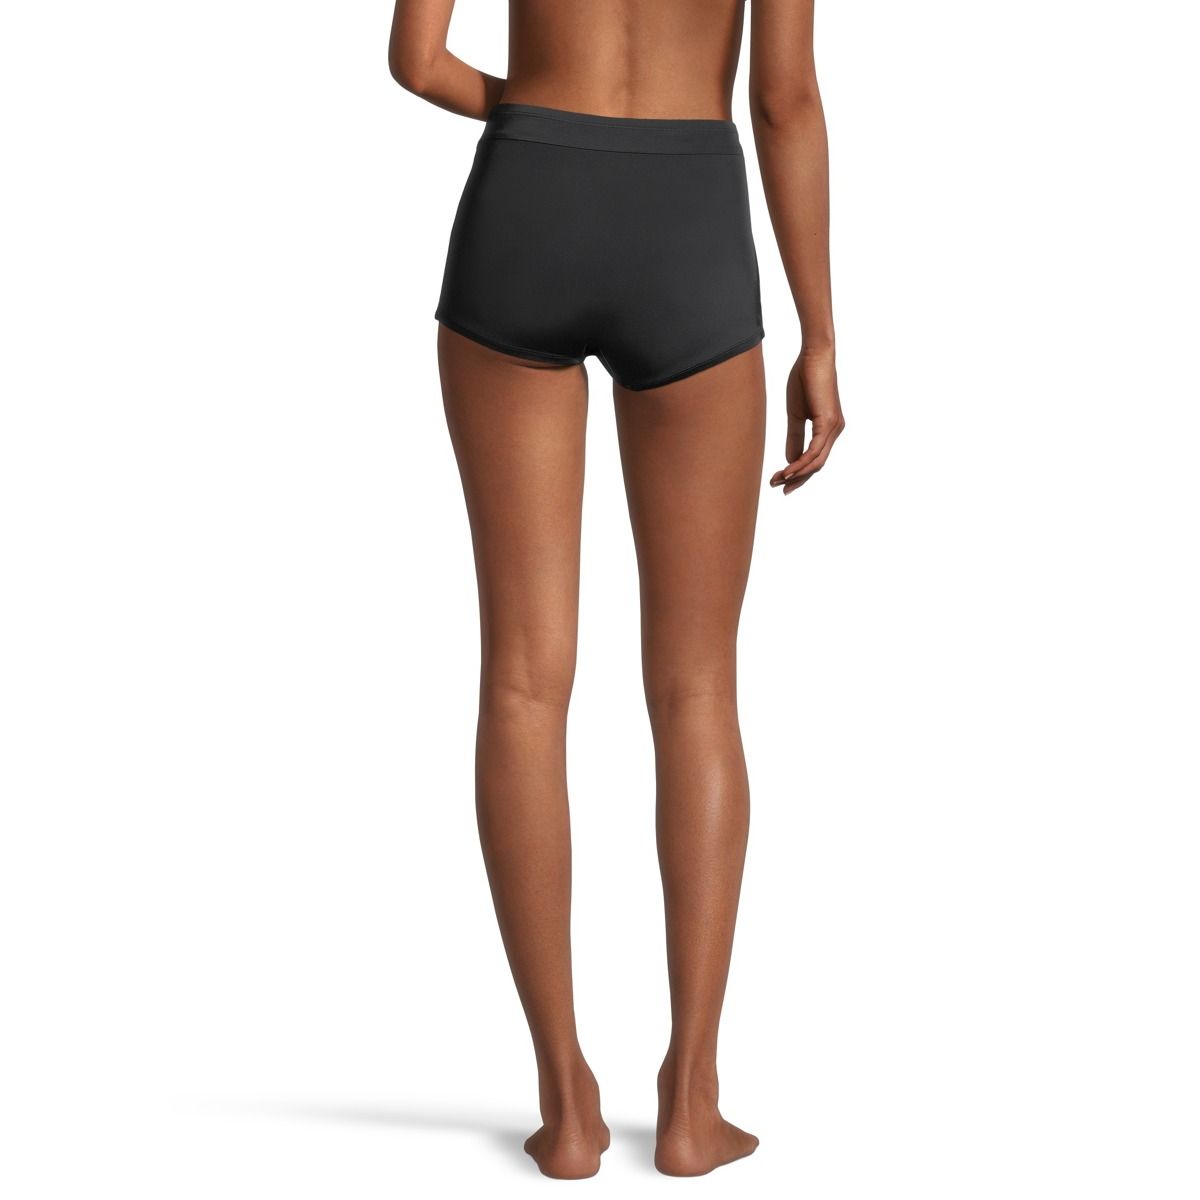 Speedo Women's Swimsuit Bottom Boyshort Length